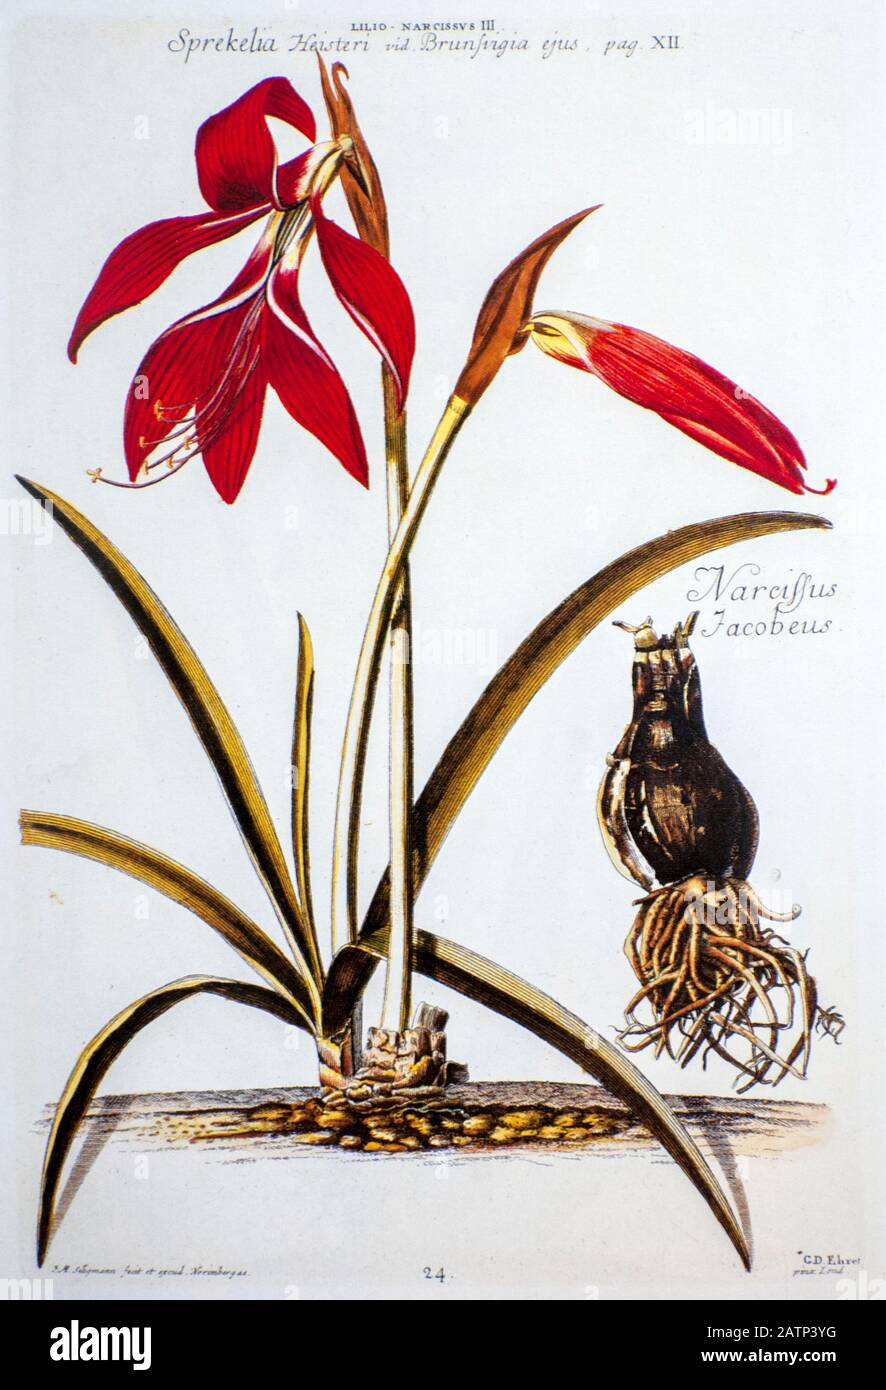 Incisione colorata su piastra Copperplate di una Sprekelia imosissima (Jacobean Lily) di hortus nitisimus di Christoph Jakob Trew (Norimberga 1750-1792) Foto Stock